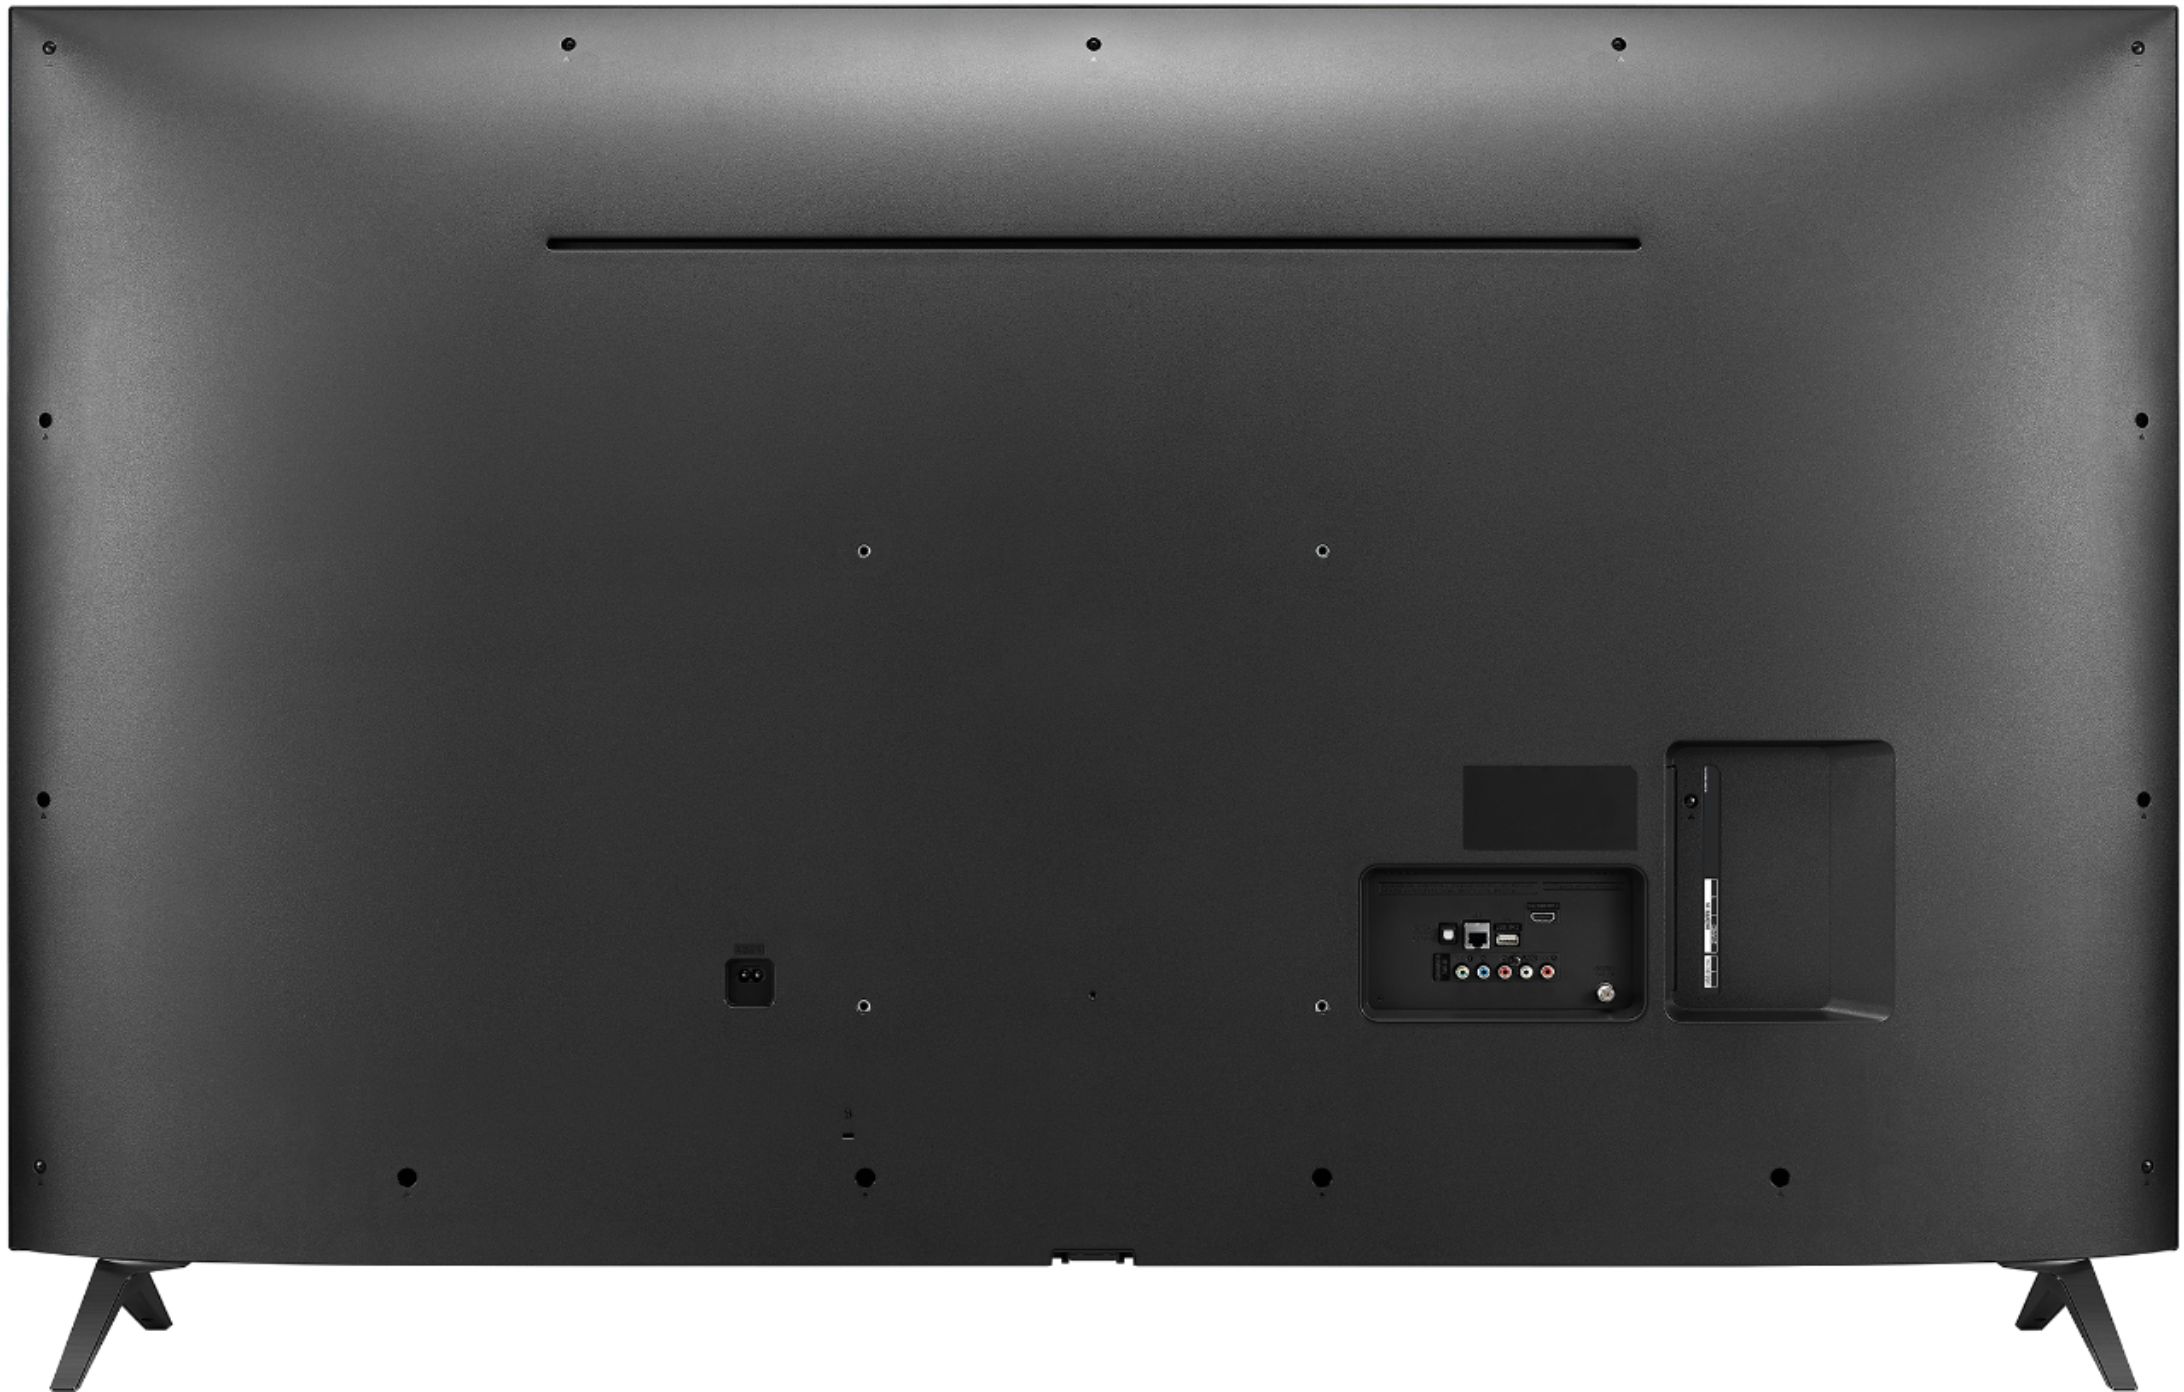 LG 50UM7300PUA: 50 Inch Class 4K HDR Smart LED UHD TV w/ AI ThinQ®